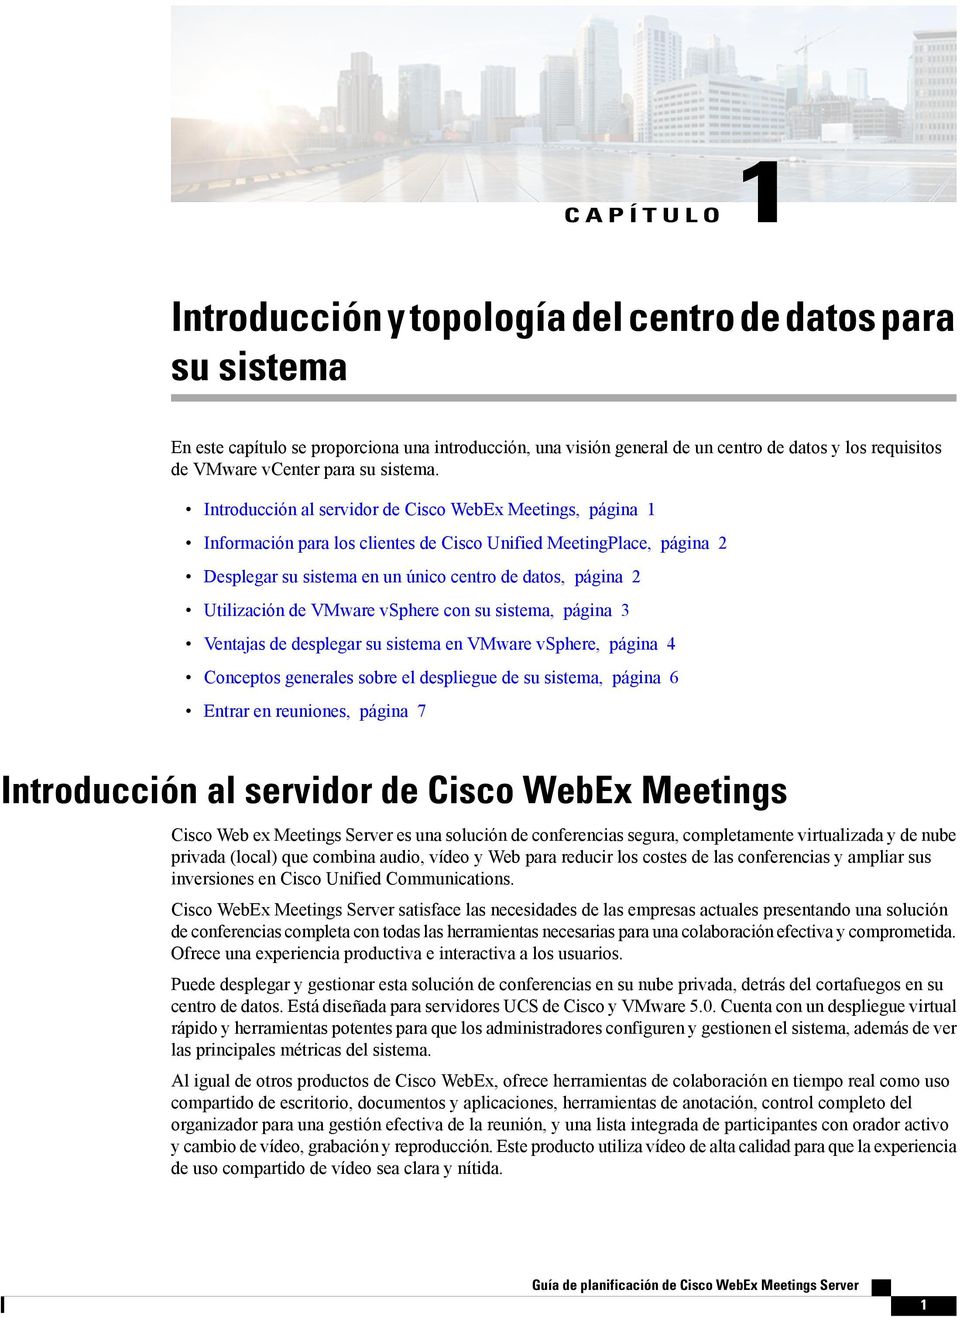 Introducción al servidor de Cisco WebEx Meetings, página 1 Información para los clientes de Cisco Unified MeetingPlace, página 2 Desplegar su sistema en un único centro de datos, página 2 Utilización